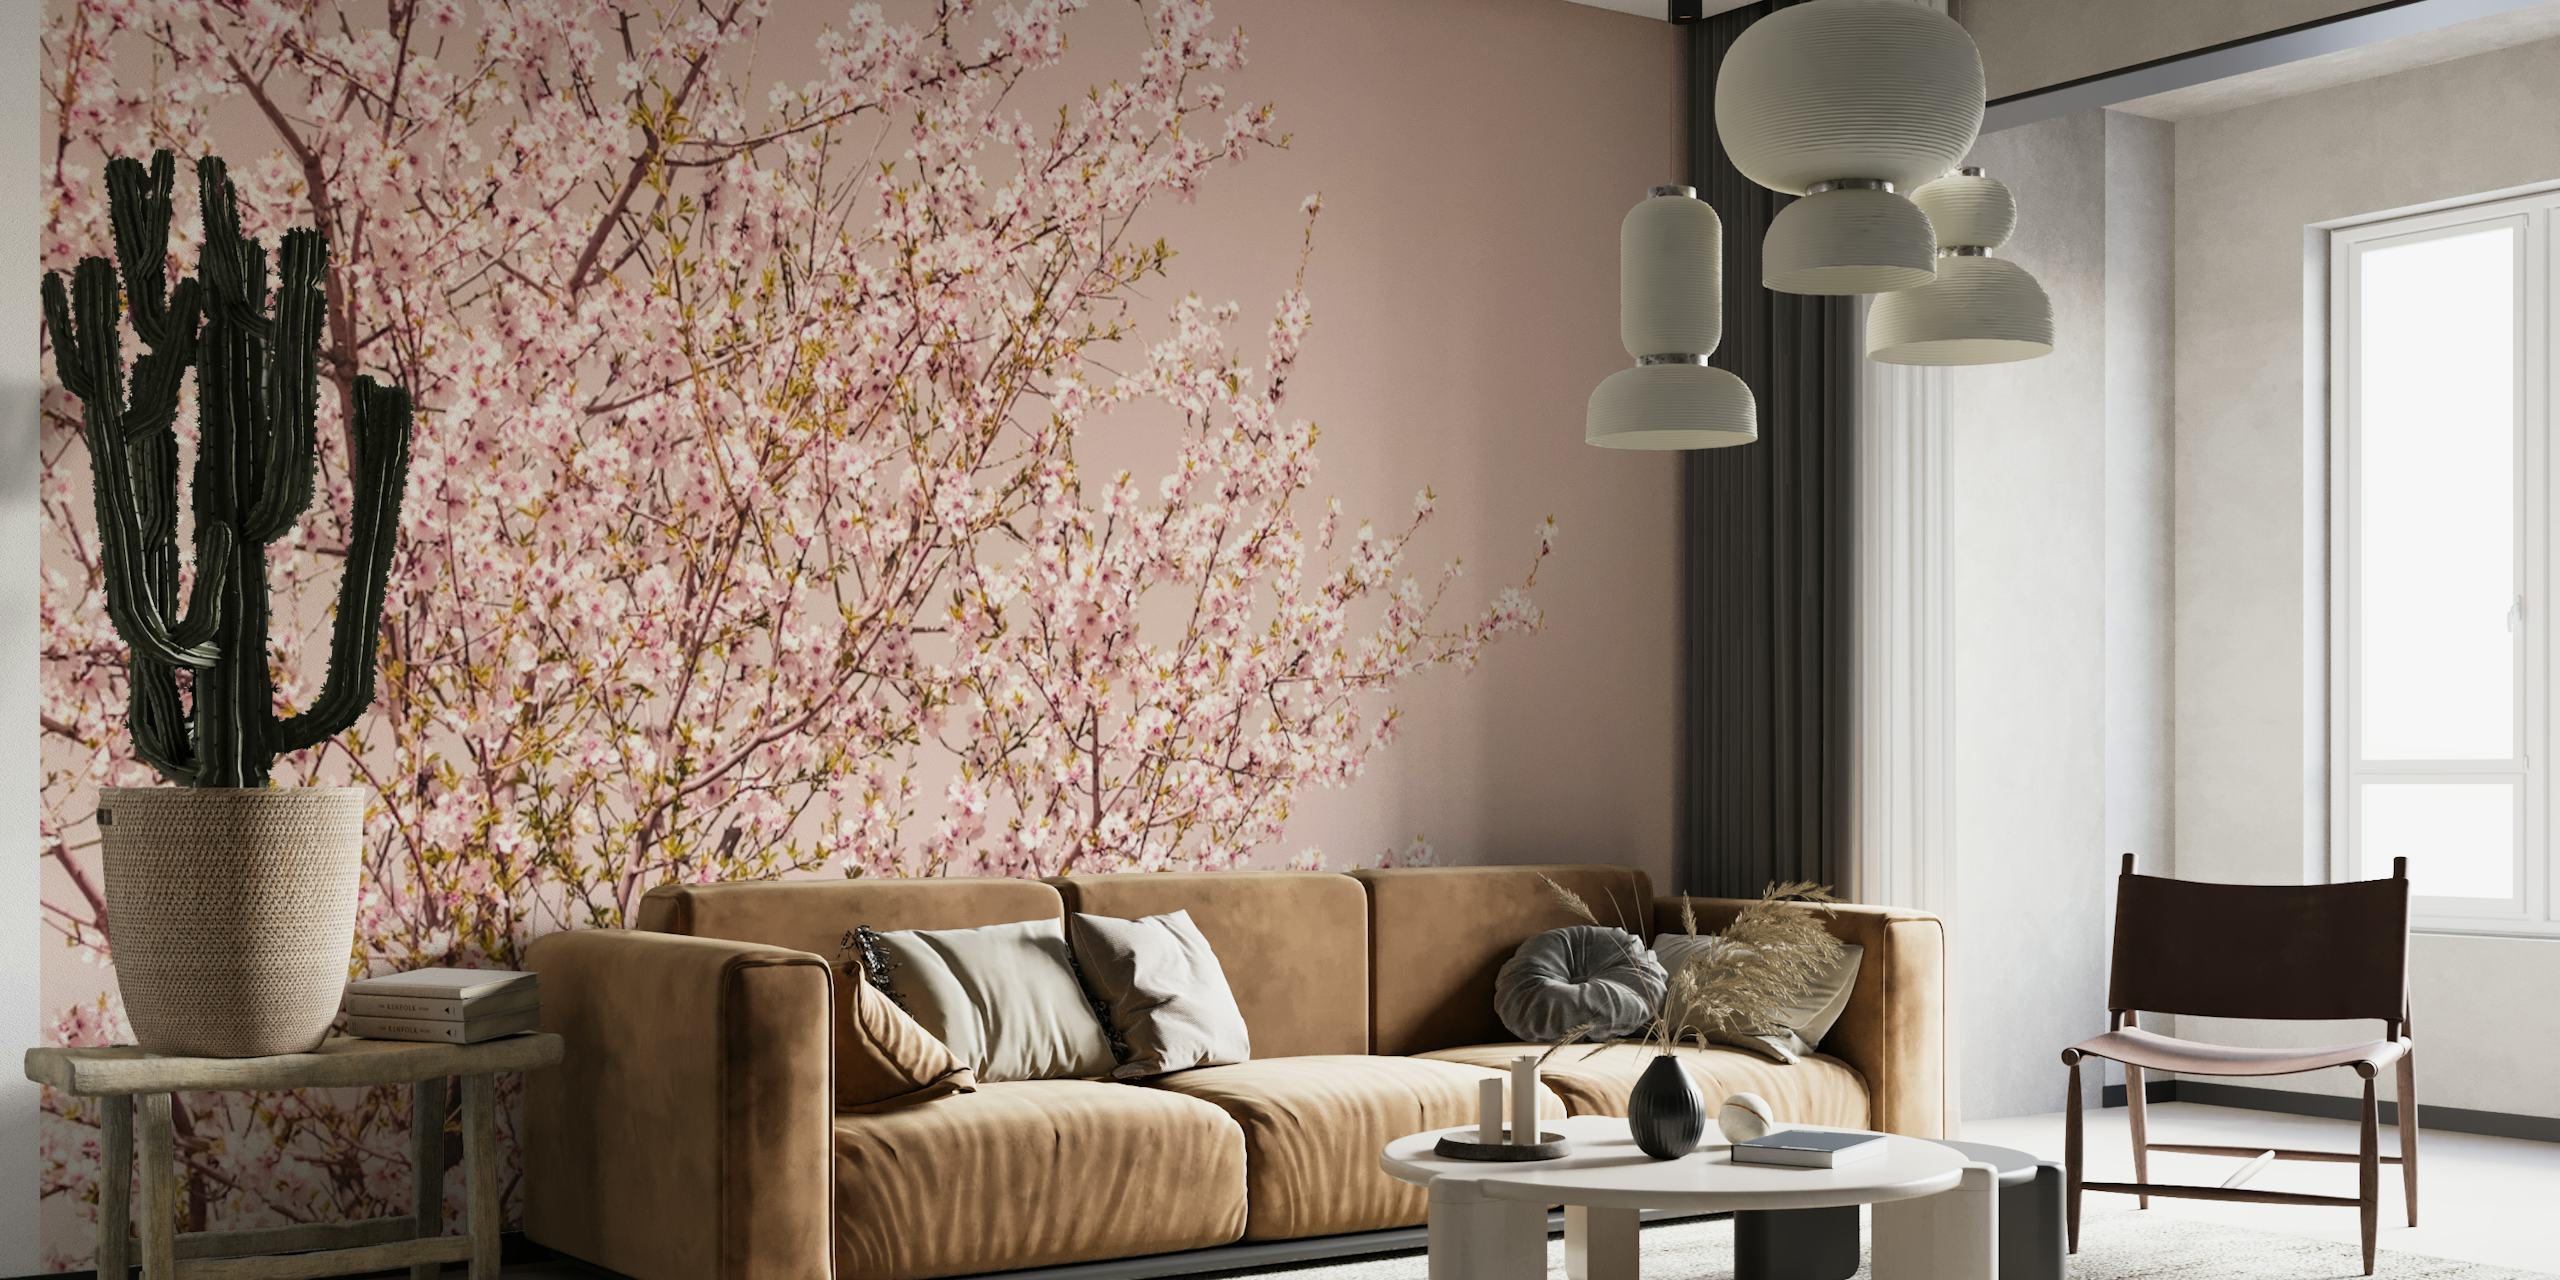 Spring Blossom Tree papel pintado